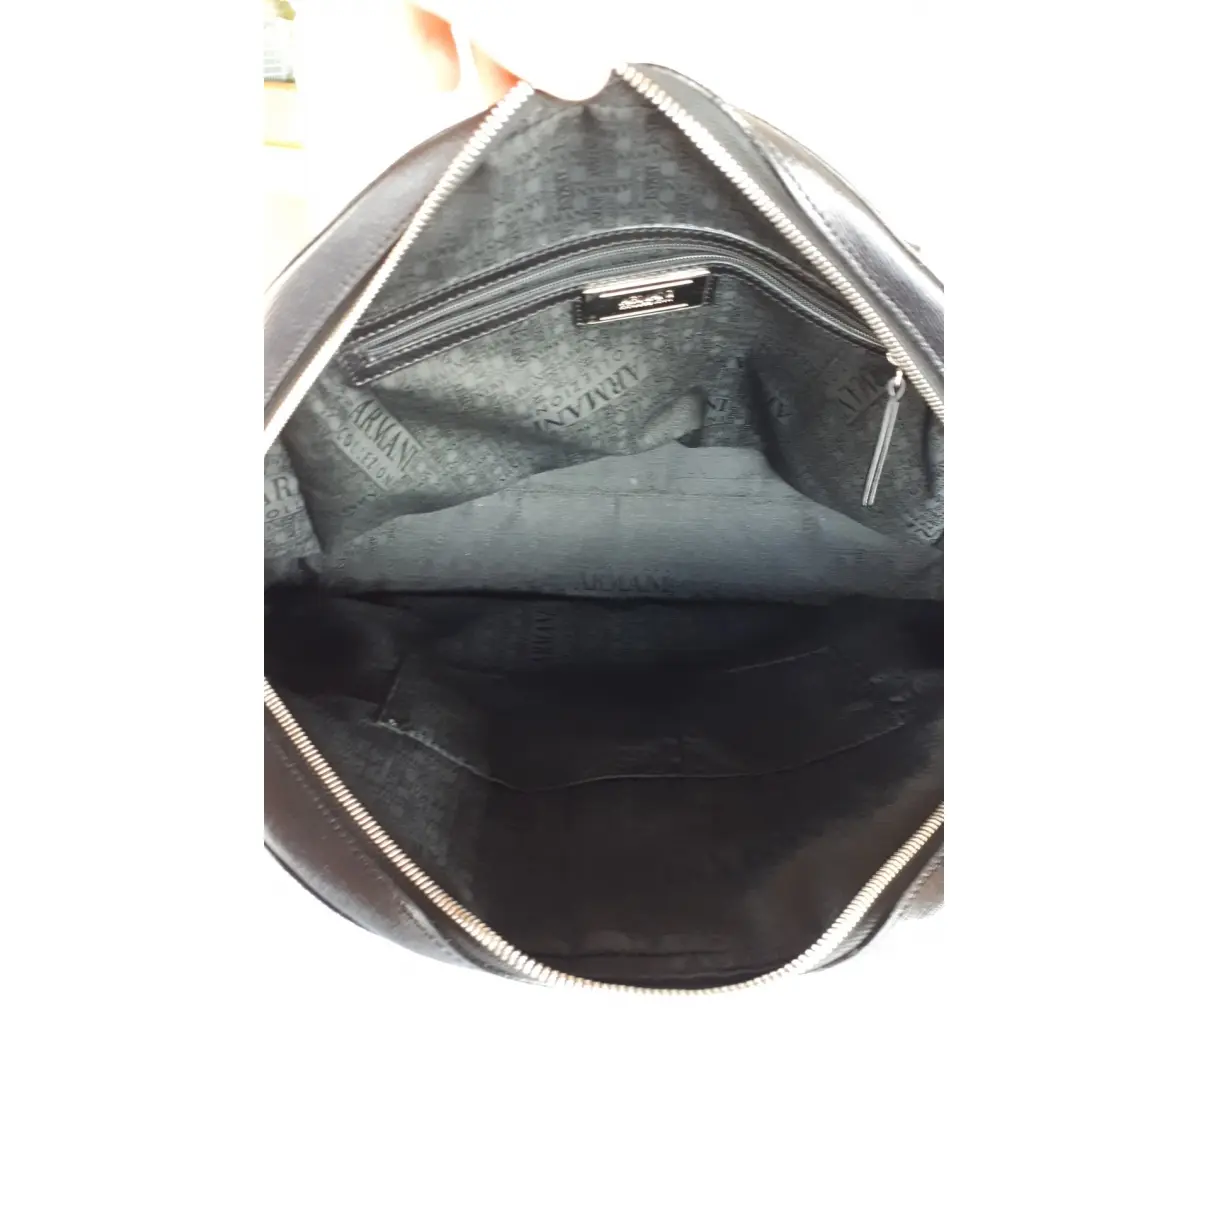 Leather handbag Armani Collezioni